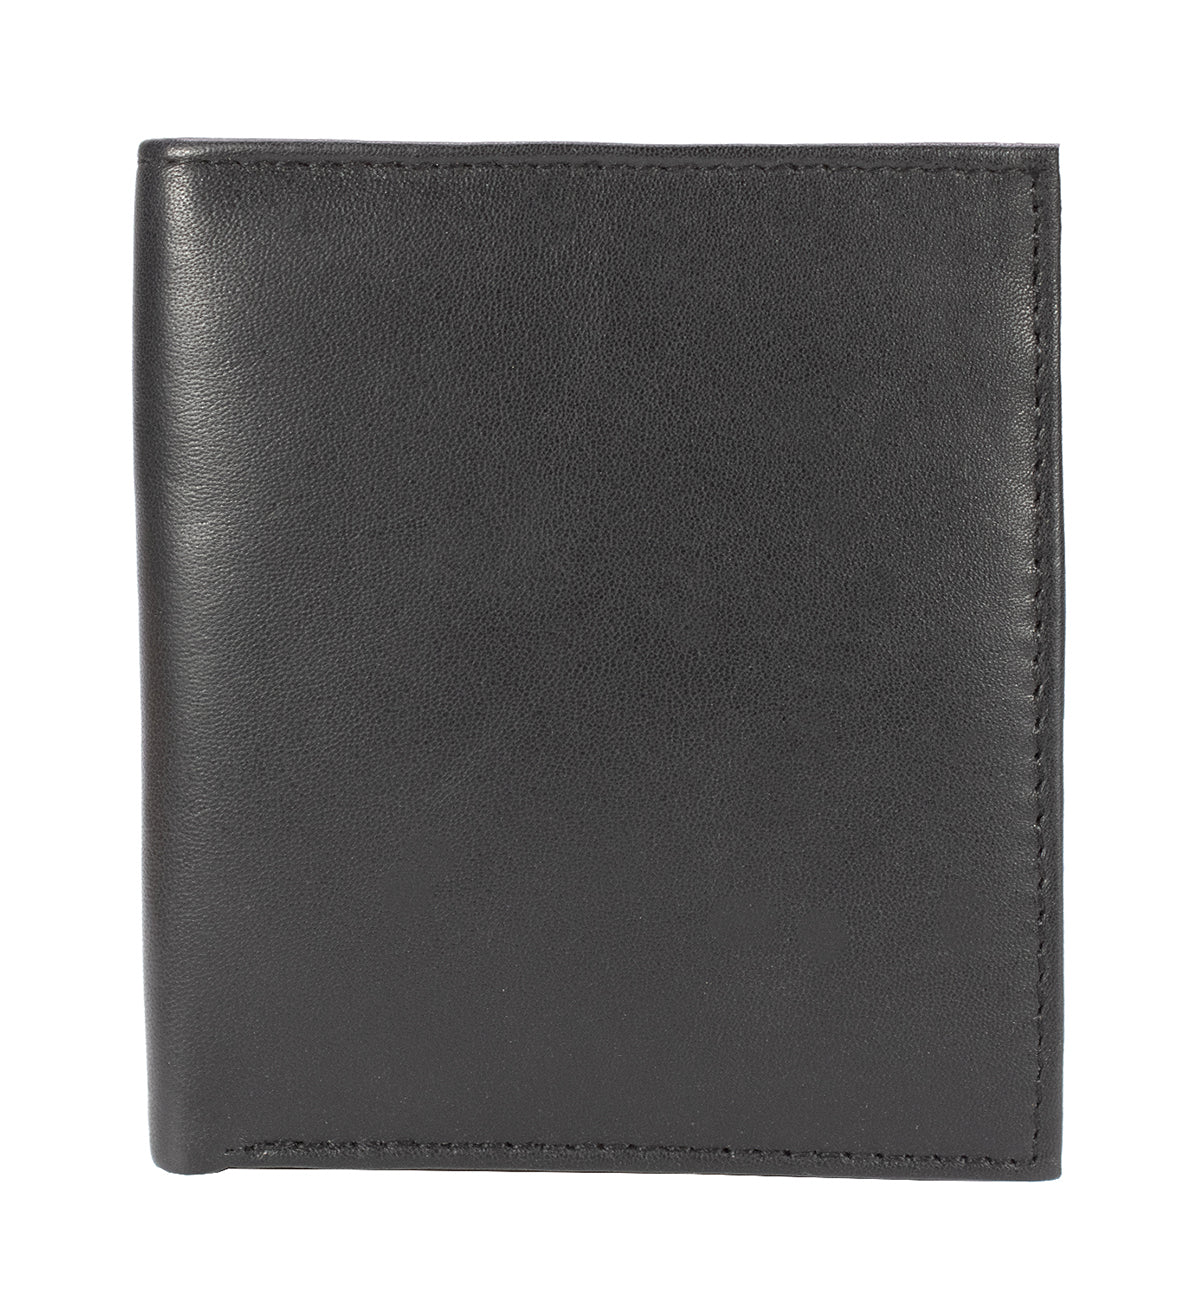 Black Genuine Leather Men's Bifold Hipster Wallet Credit Card Holder